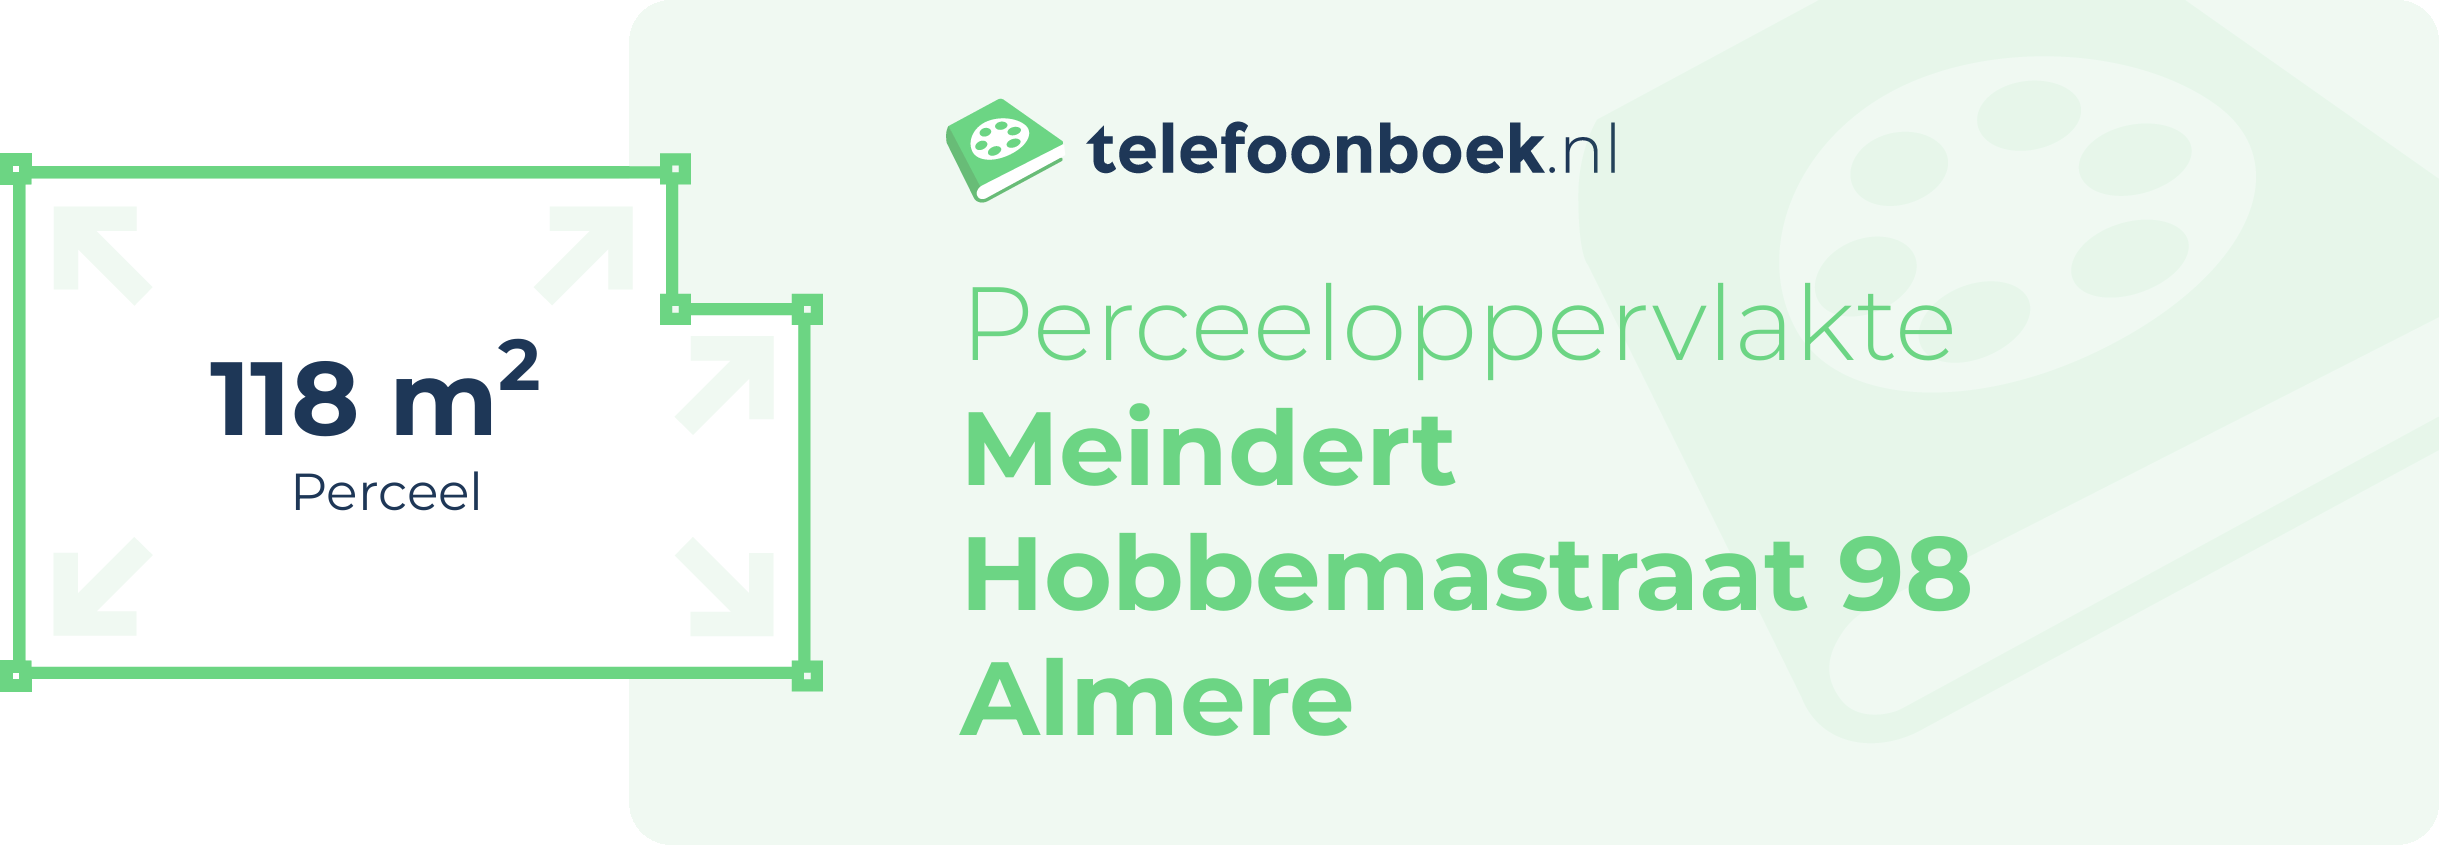 Perceeloppervlakte Meindert Hobbemastraat 98 Almere